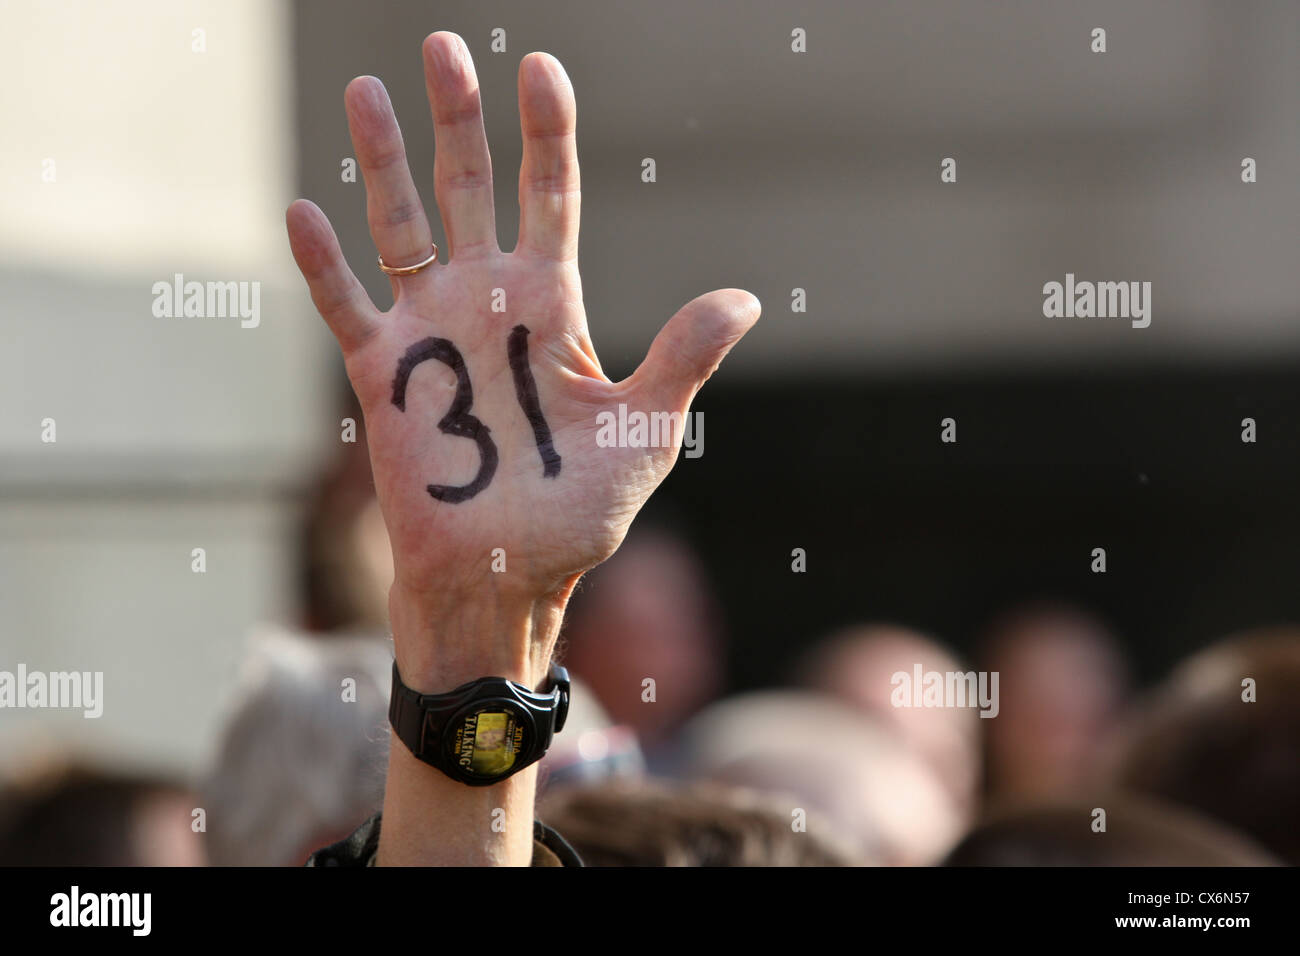 Hand der Demonstrant zeigt Nummer 31, Sinn Artikel 31 der russischen Verfassung das Recht auf friedliche Demonstrationen garantiert Stockfoto